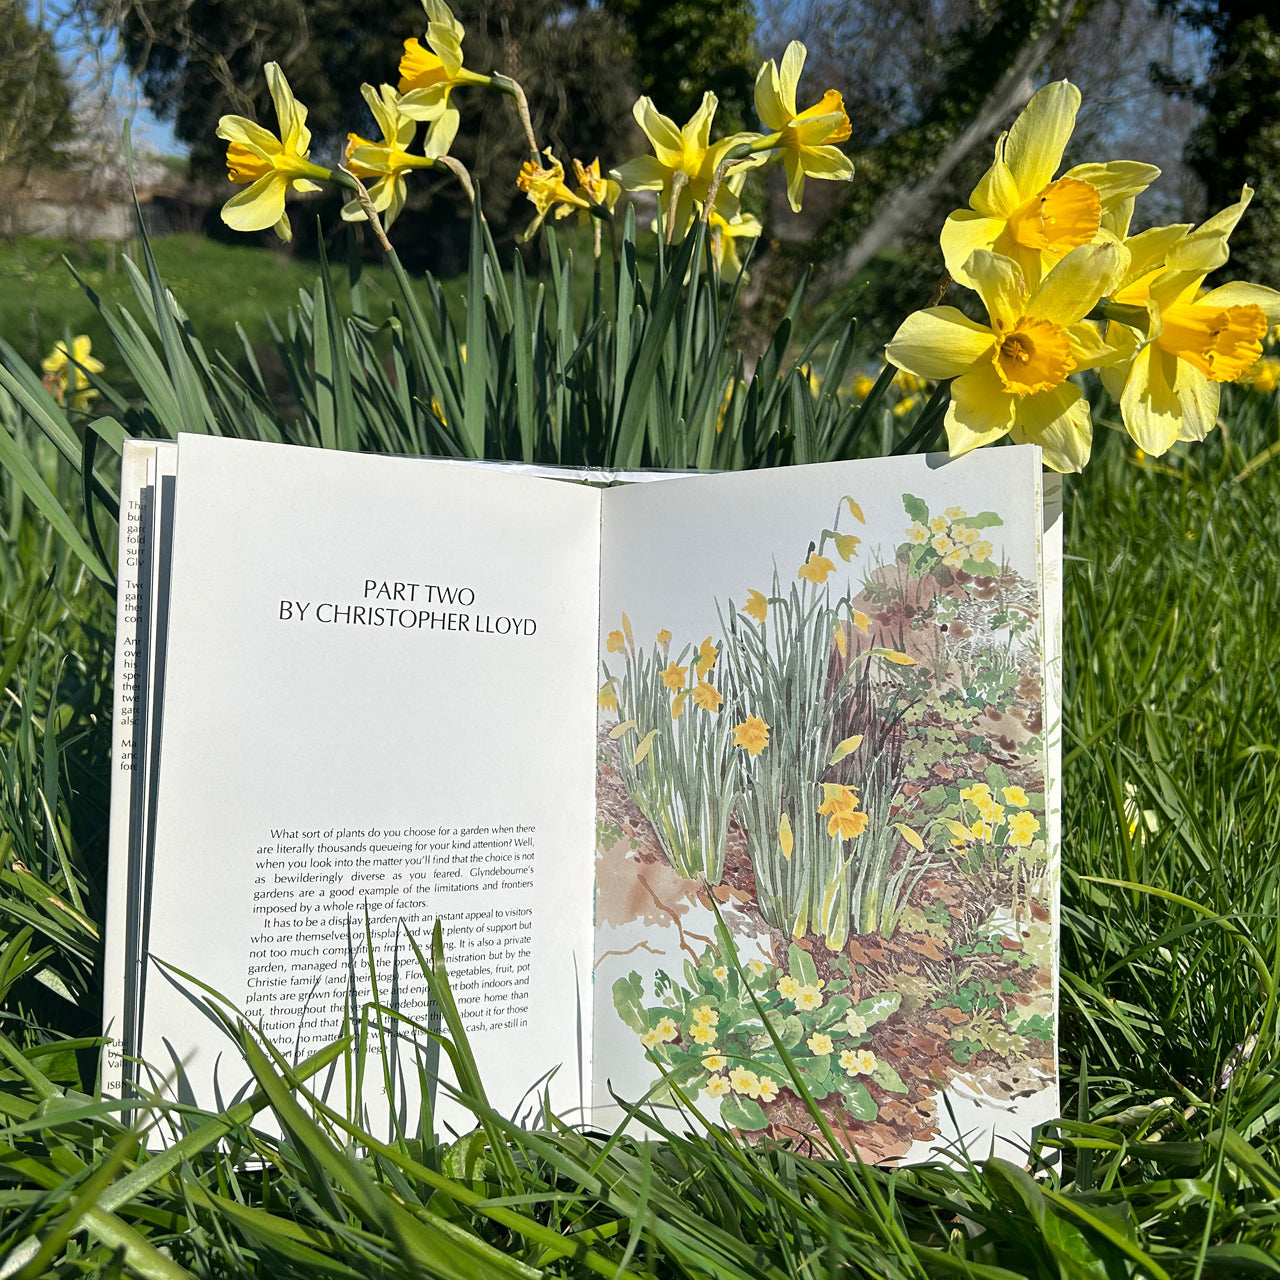 Glyndebourne. The Gardens (Vintage 1st Edition) by Anne Scott-James and Christopher Lloyd Glyndebourne Shop